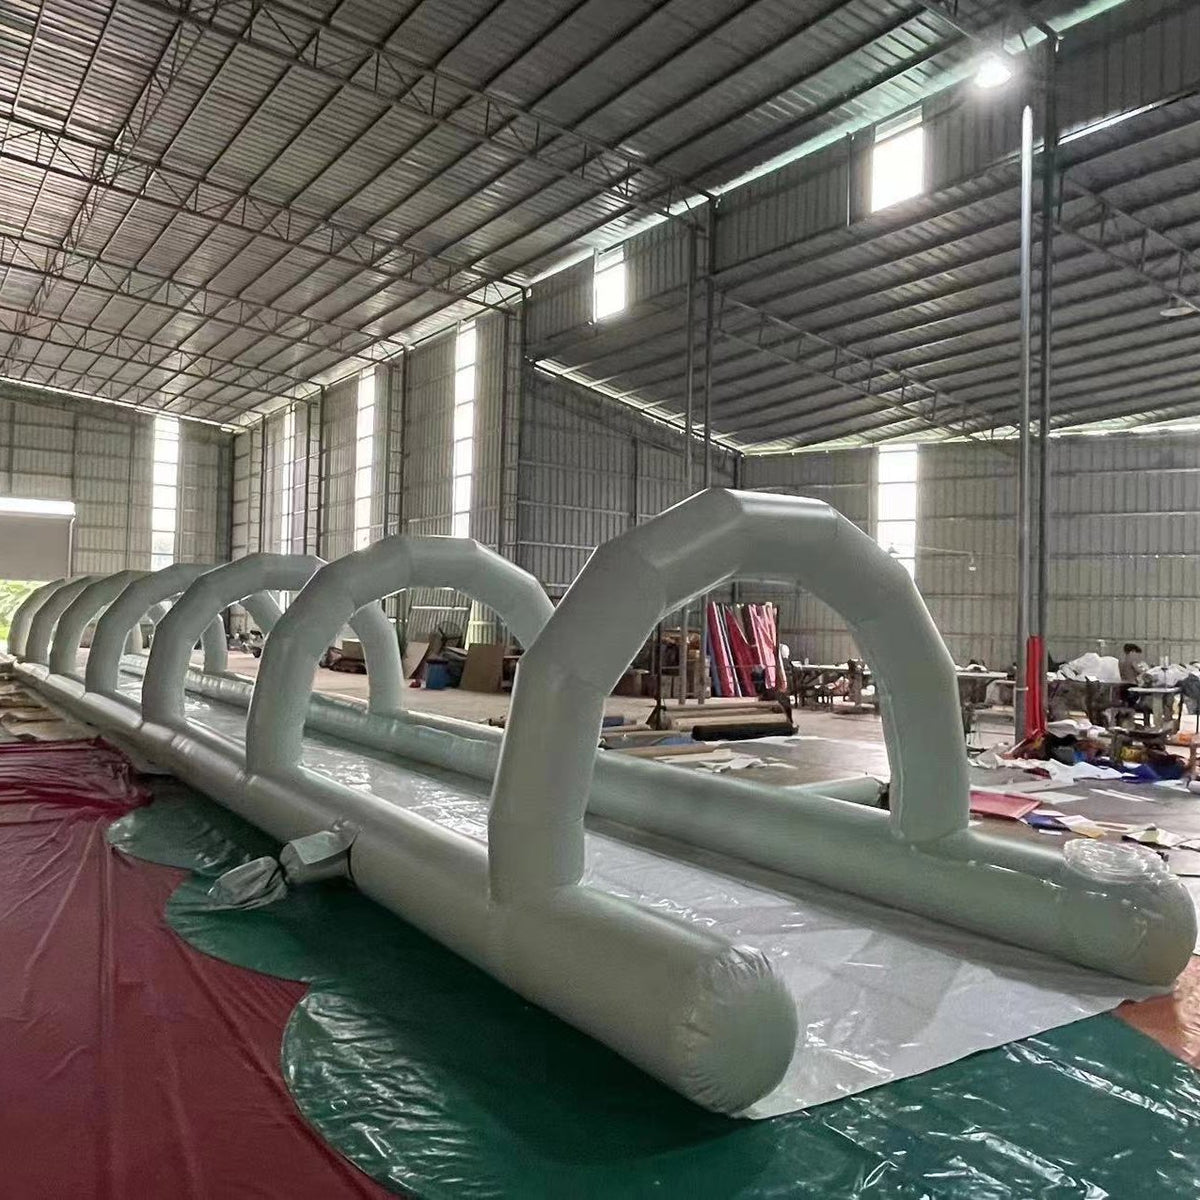 white custom inflatable slip n slide